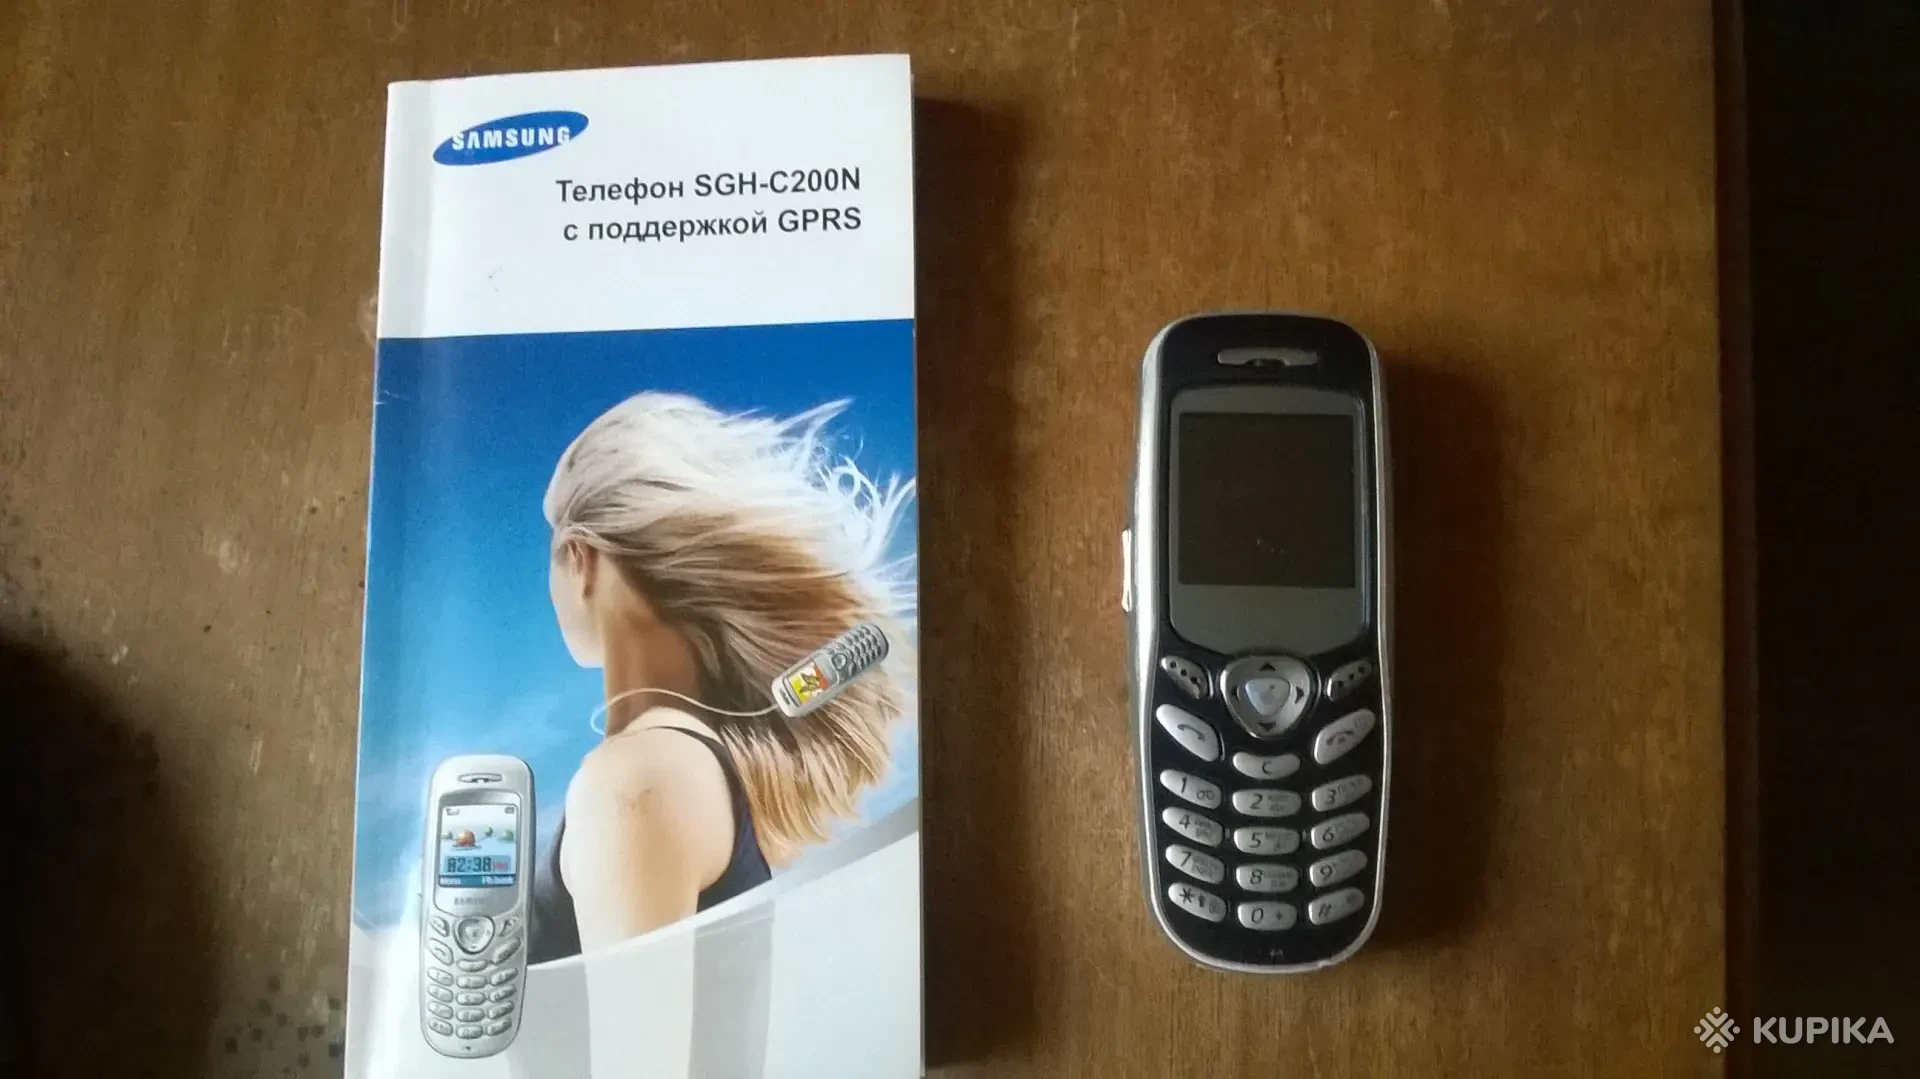 Samsung GT-E кнопочный телефон купить в Минске